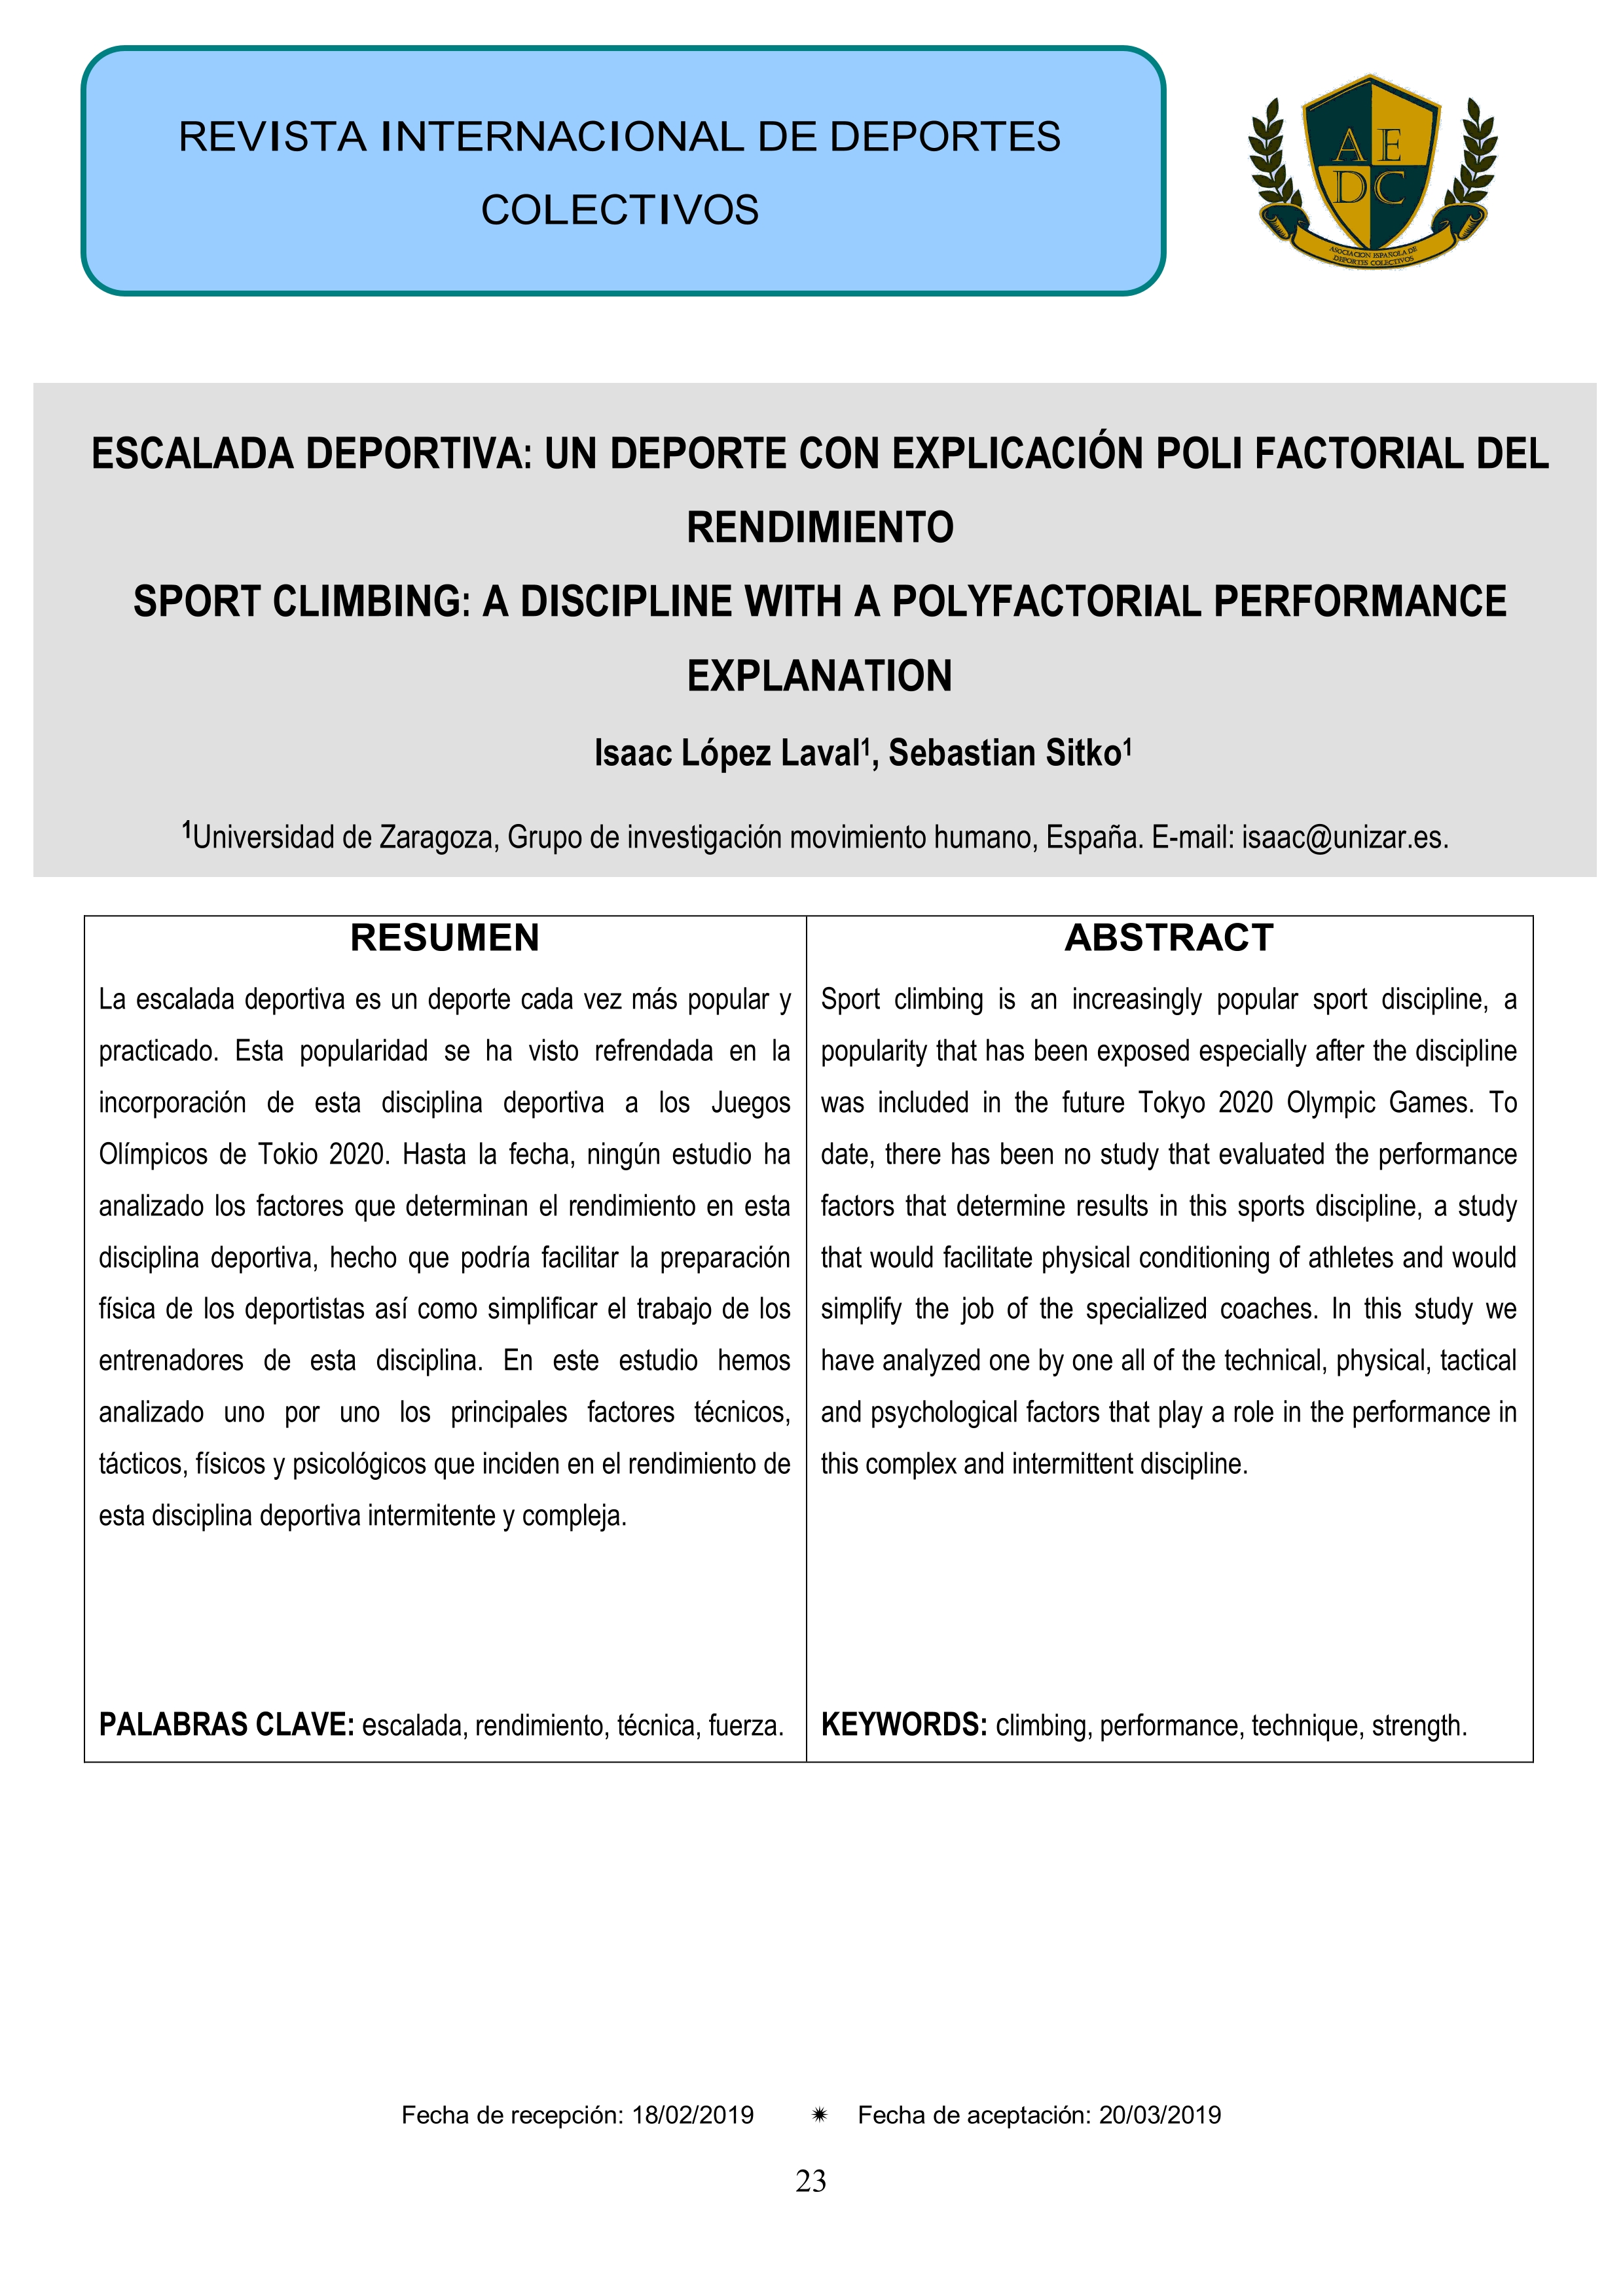 Escalada deportiva: un deporte con explicación poli factorial del rendimiento